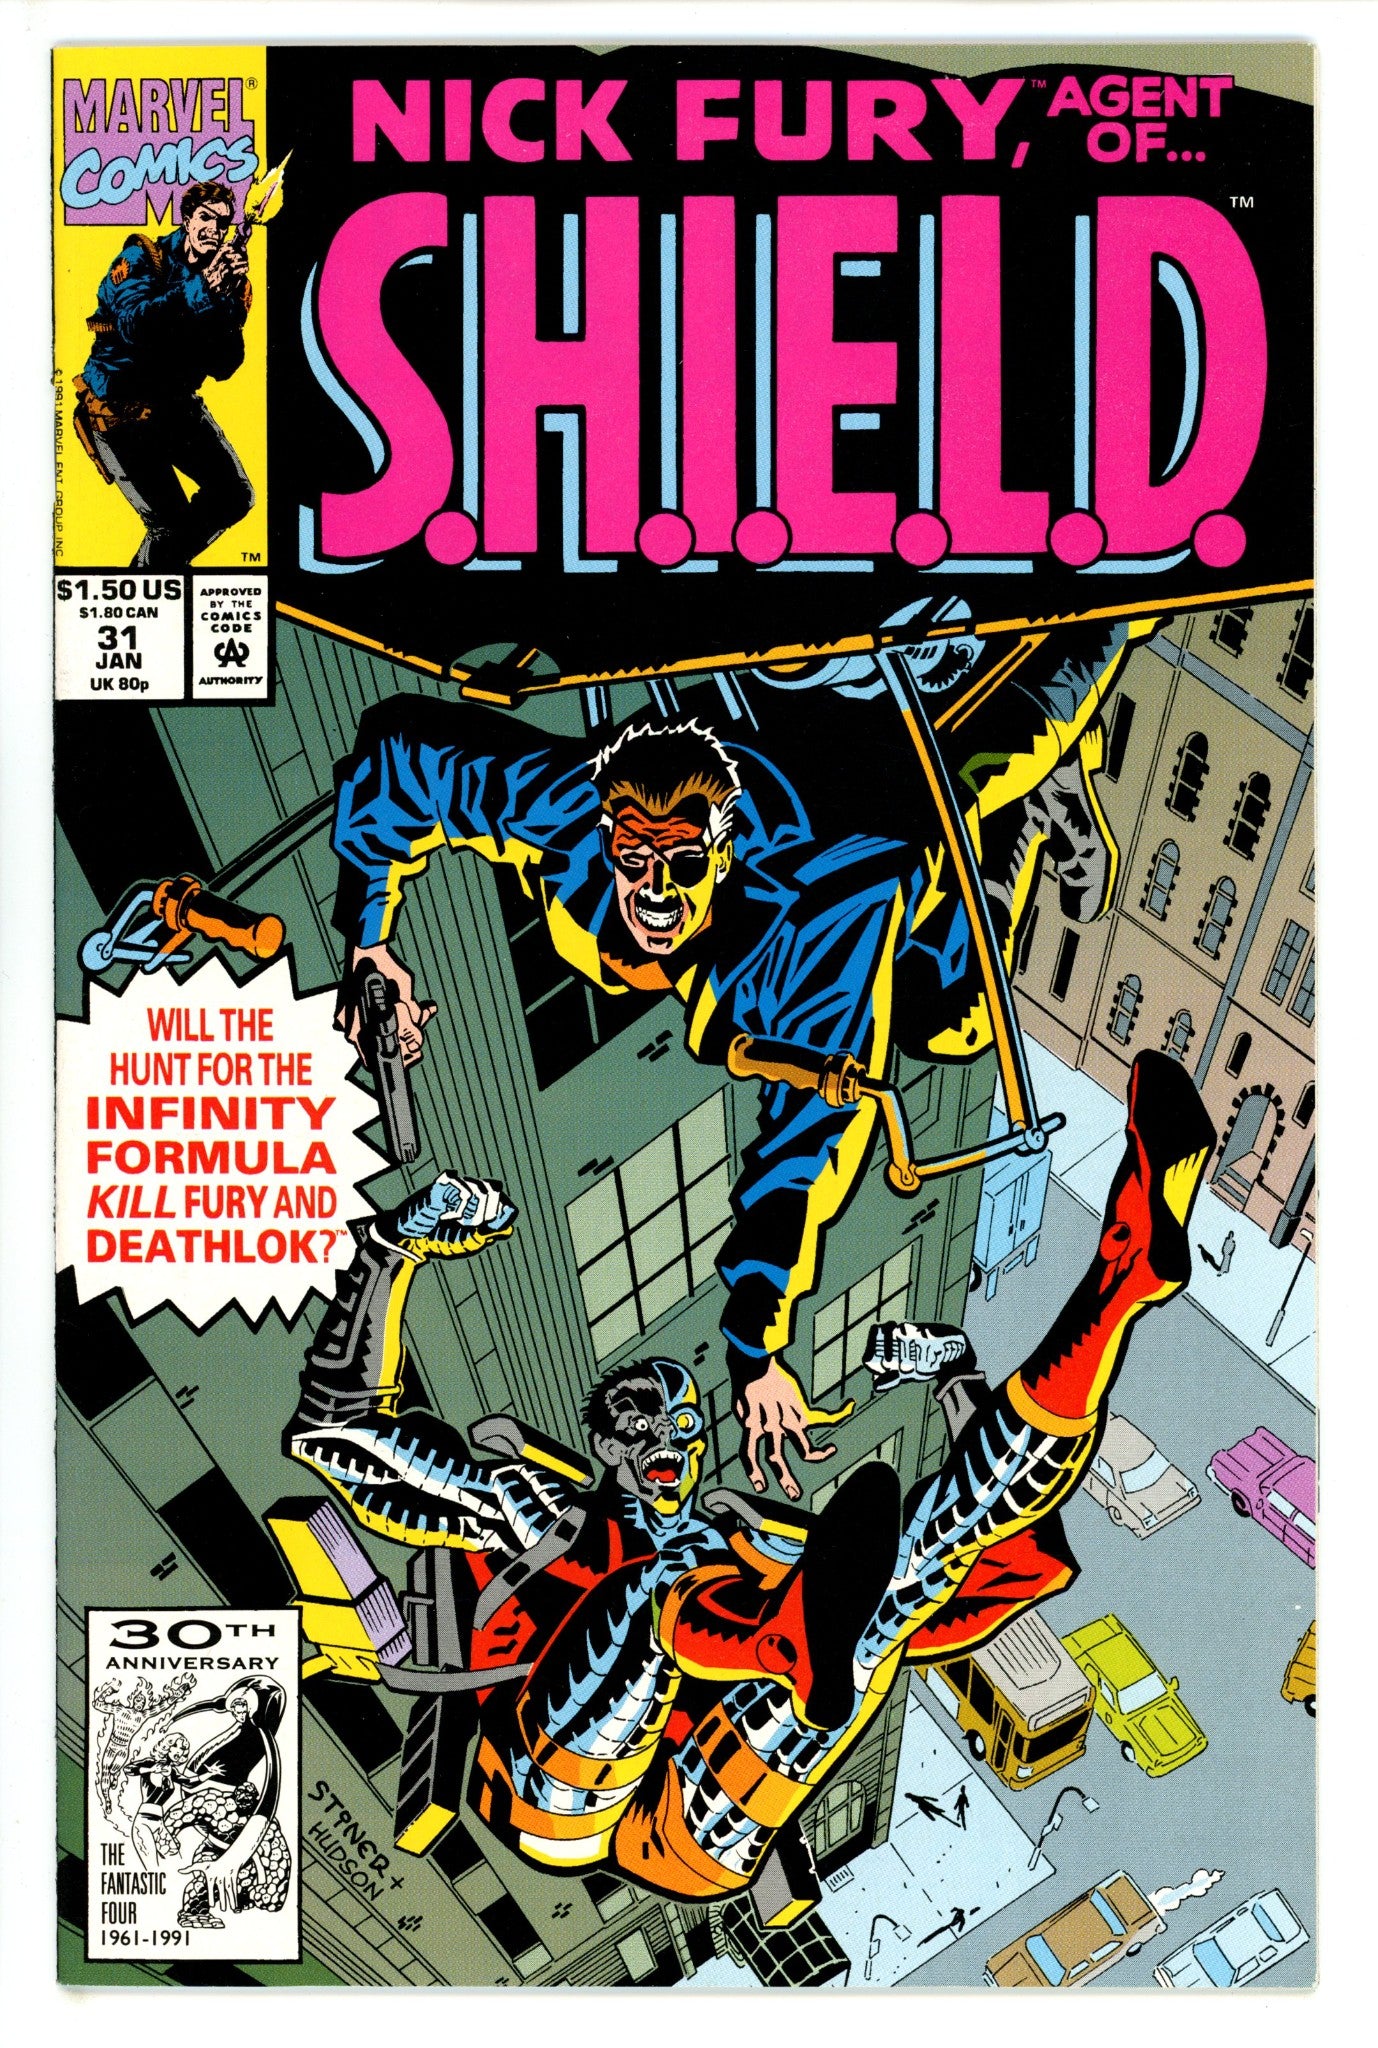 Nick Fury, Agent of S.H.I.E.L.D. Vol 4 31 (1991)